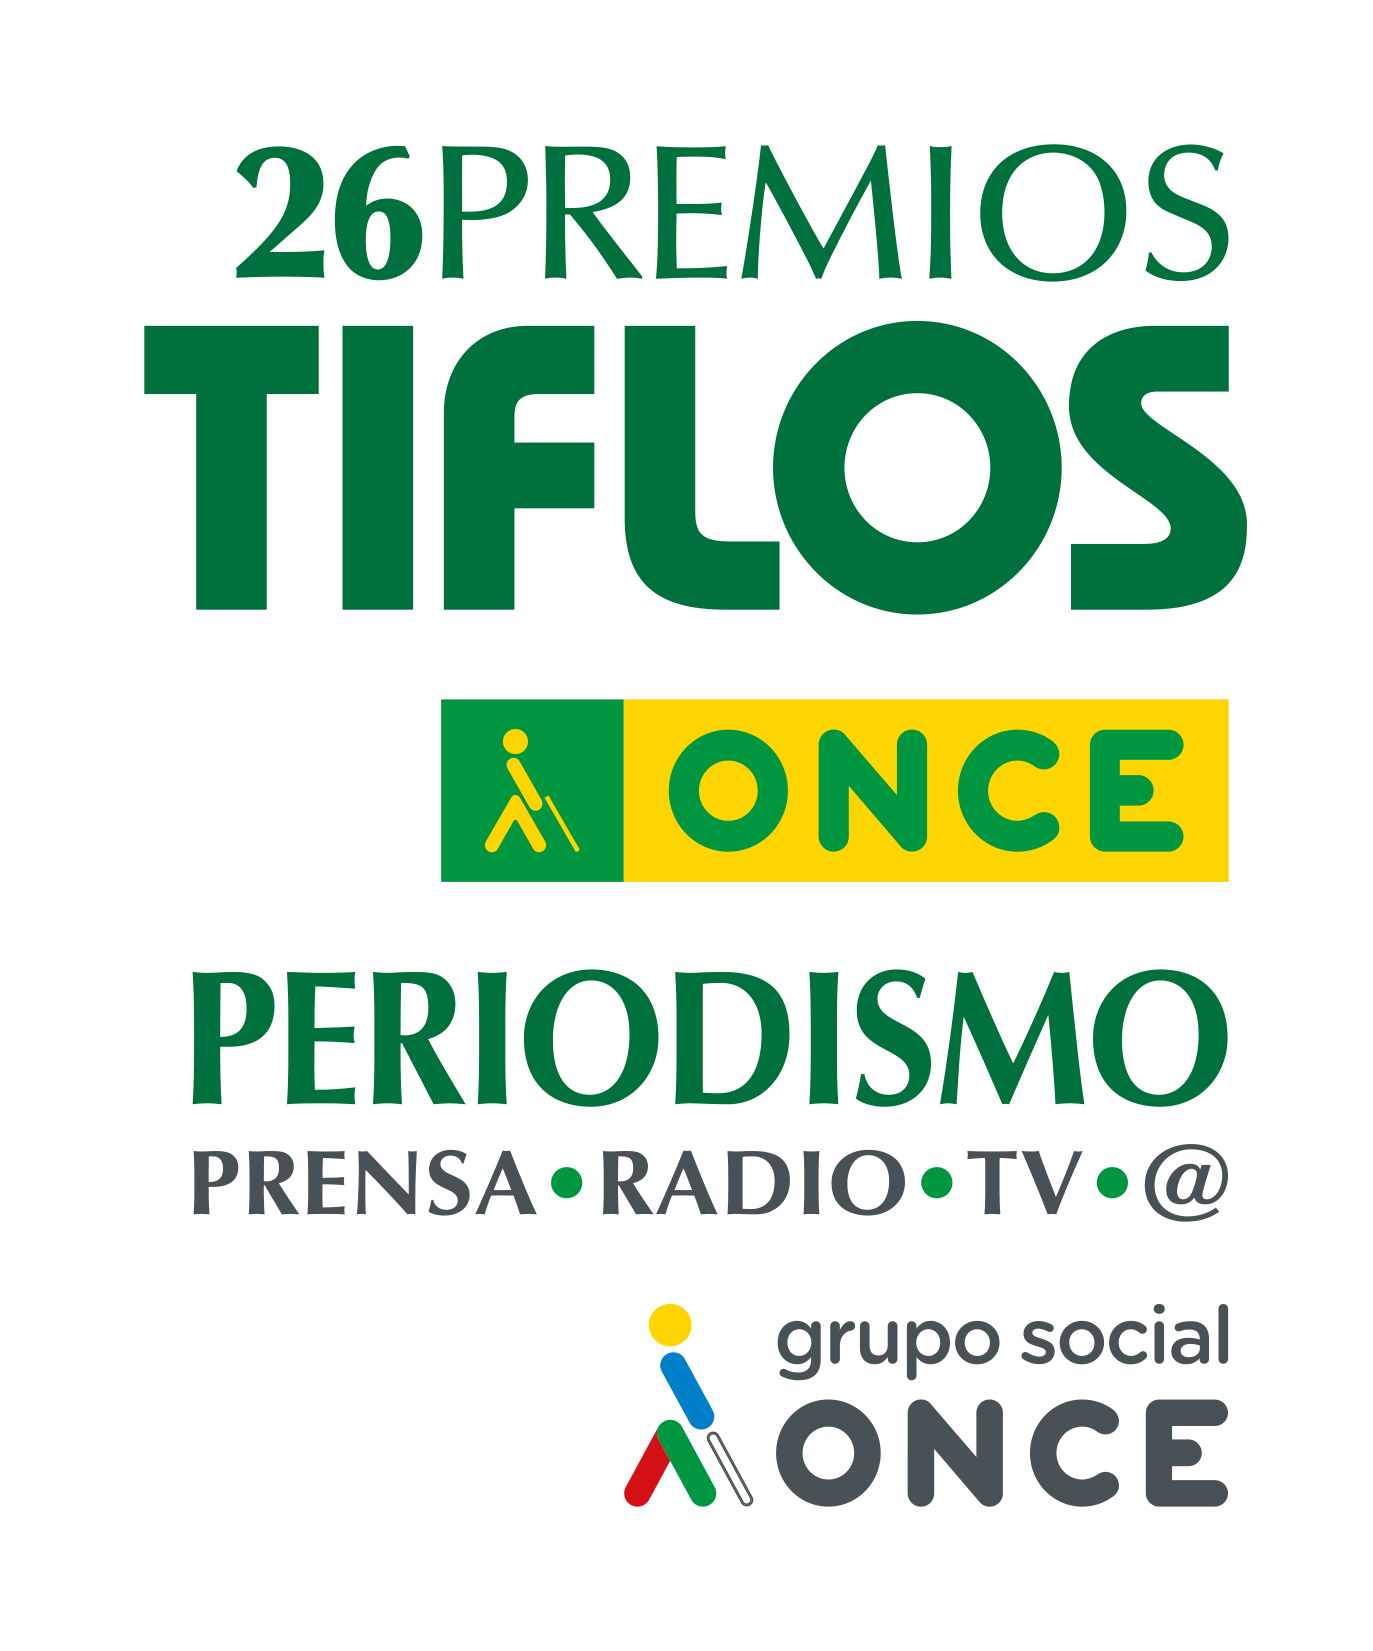 Categorías de los premios: Prensa escrita, Radio, Televisión, Periodismo Digital.